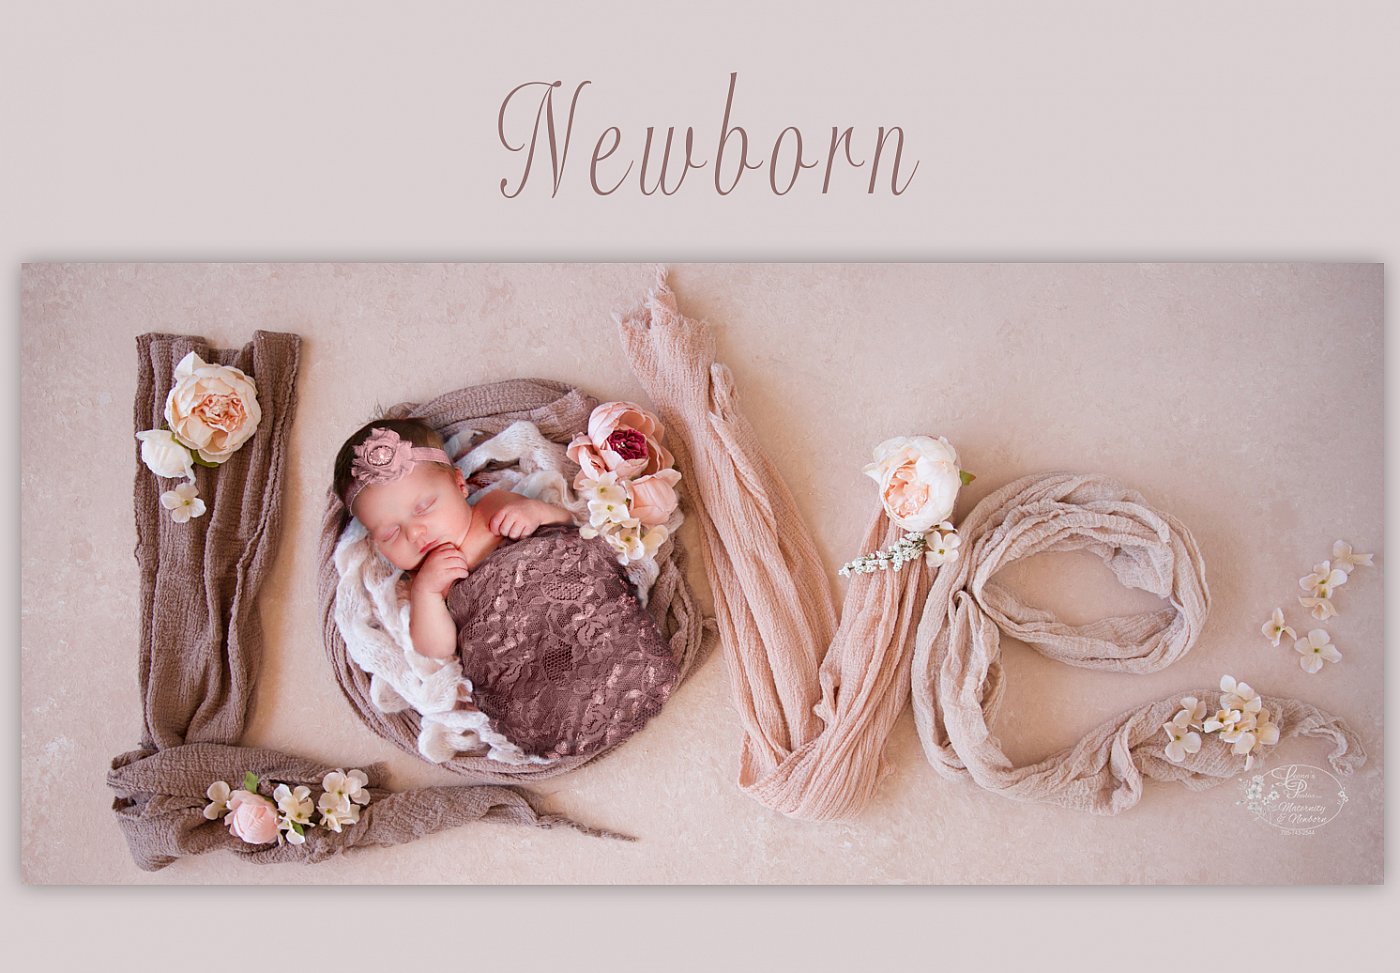 Newborn pricelistAdalyn_NB_Art_02-cropped.jpg